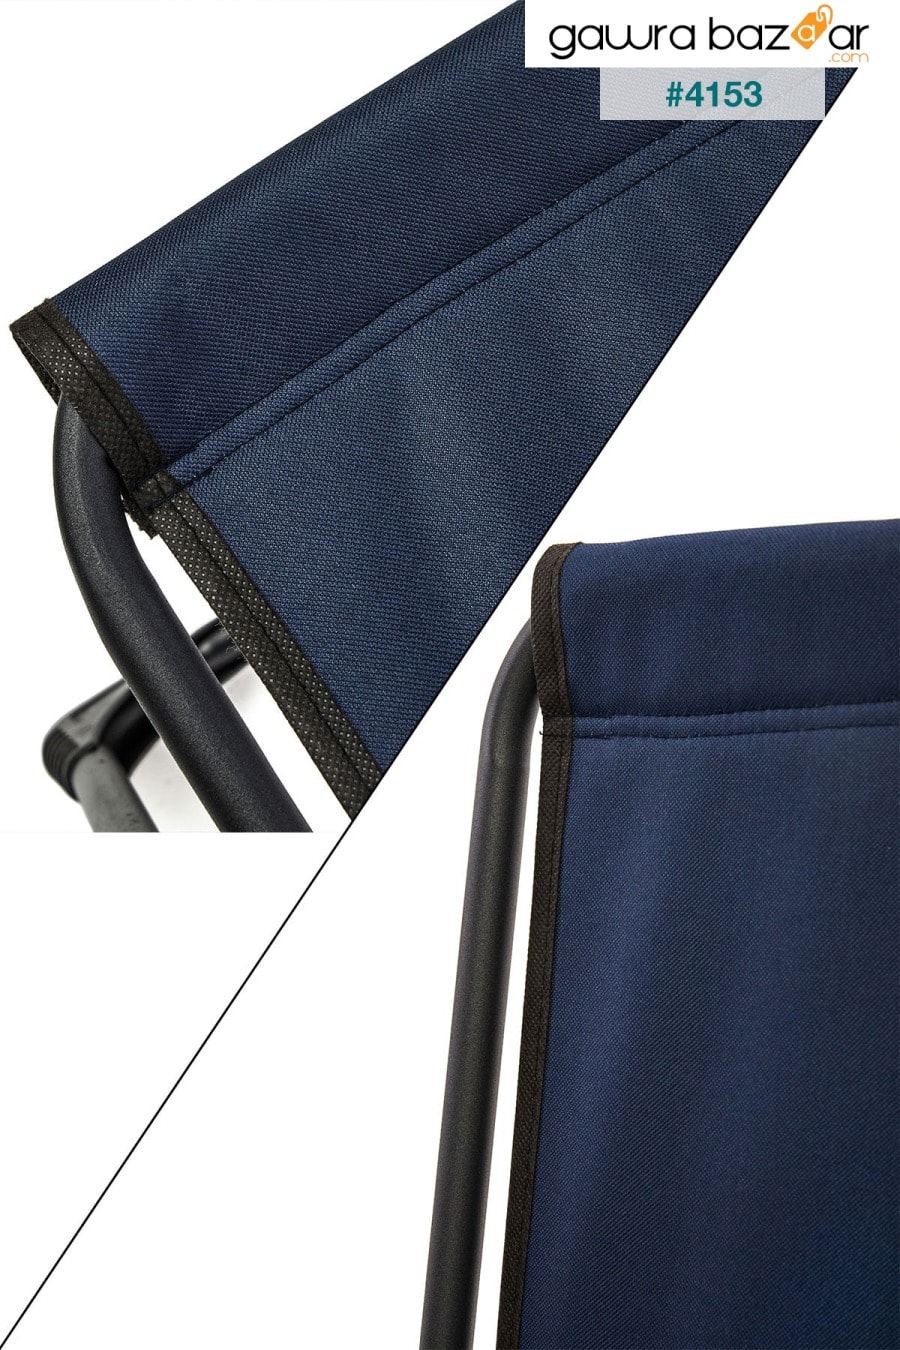 2 قطع التخييم كرسي قابل للطي نزهة كرسي أزرق داكن طاولة قابلة للطي Mdf مع حامل الكأس المستطيل moniev 5